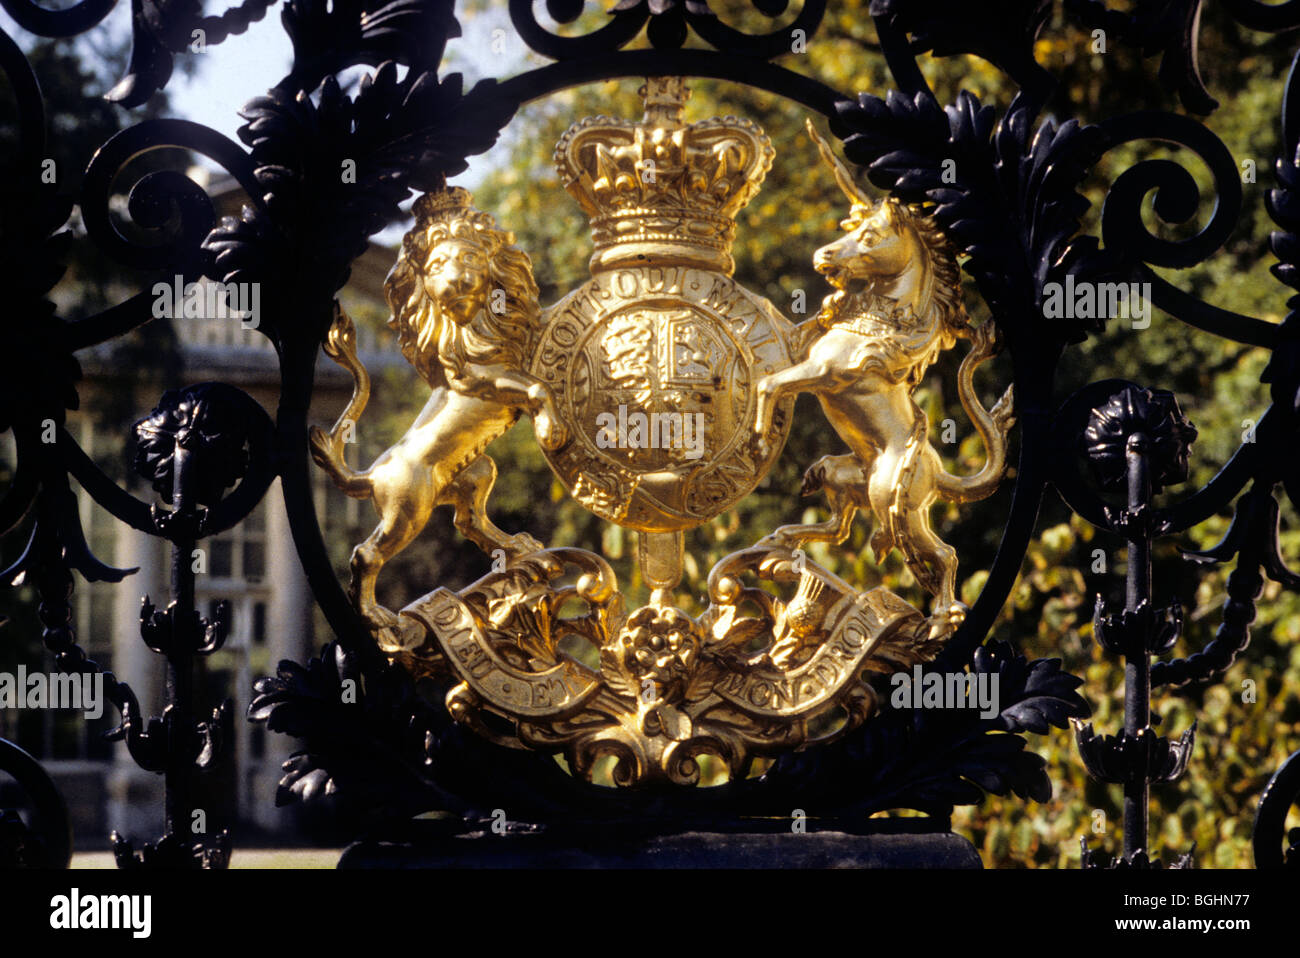 Chiffre royal, armoiries, Kew Gardens main gate Surrey England English armoiries Blasons Héraldique héraldique appareils périphériques Banque D'Images